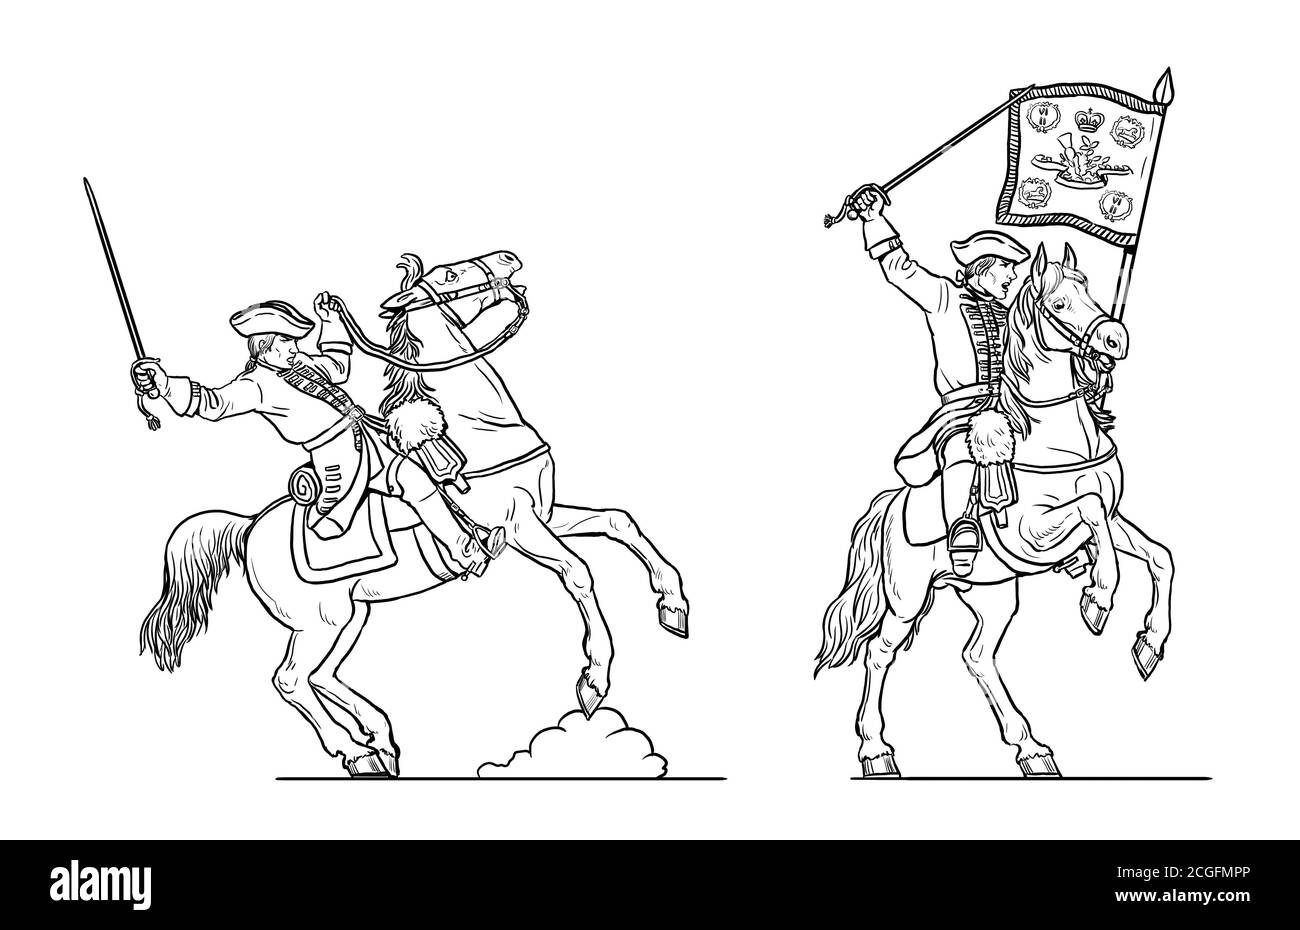 Attacco di cavalleria. Disegno di draghi inglesi. Disegno storico della Guerra dei sette anni. Foto Stock